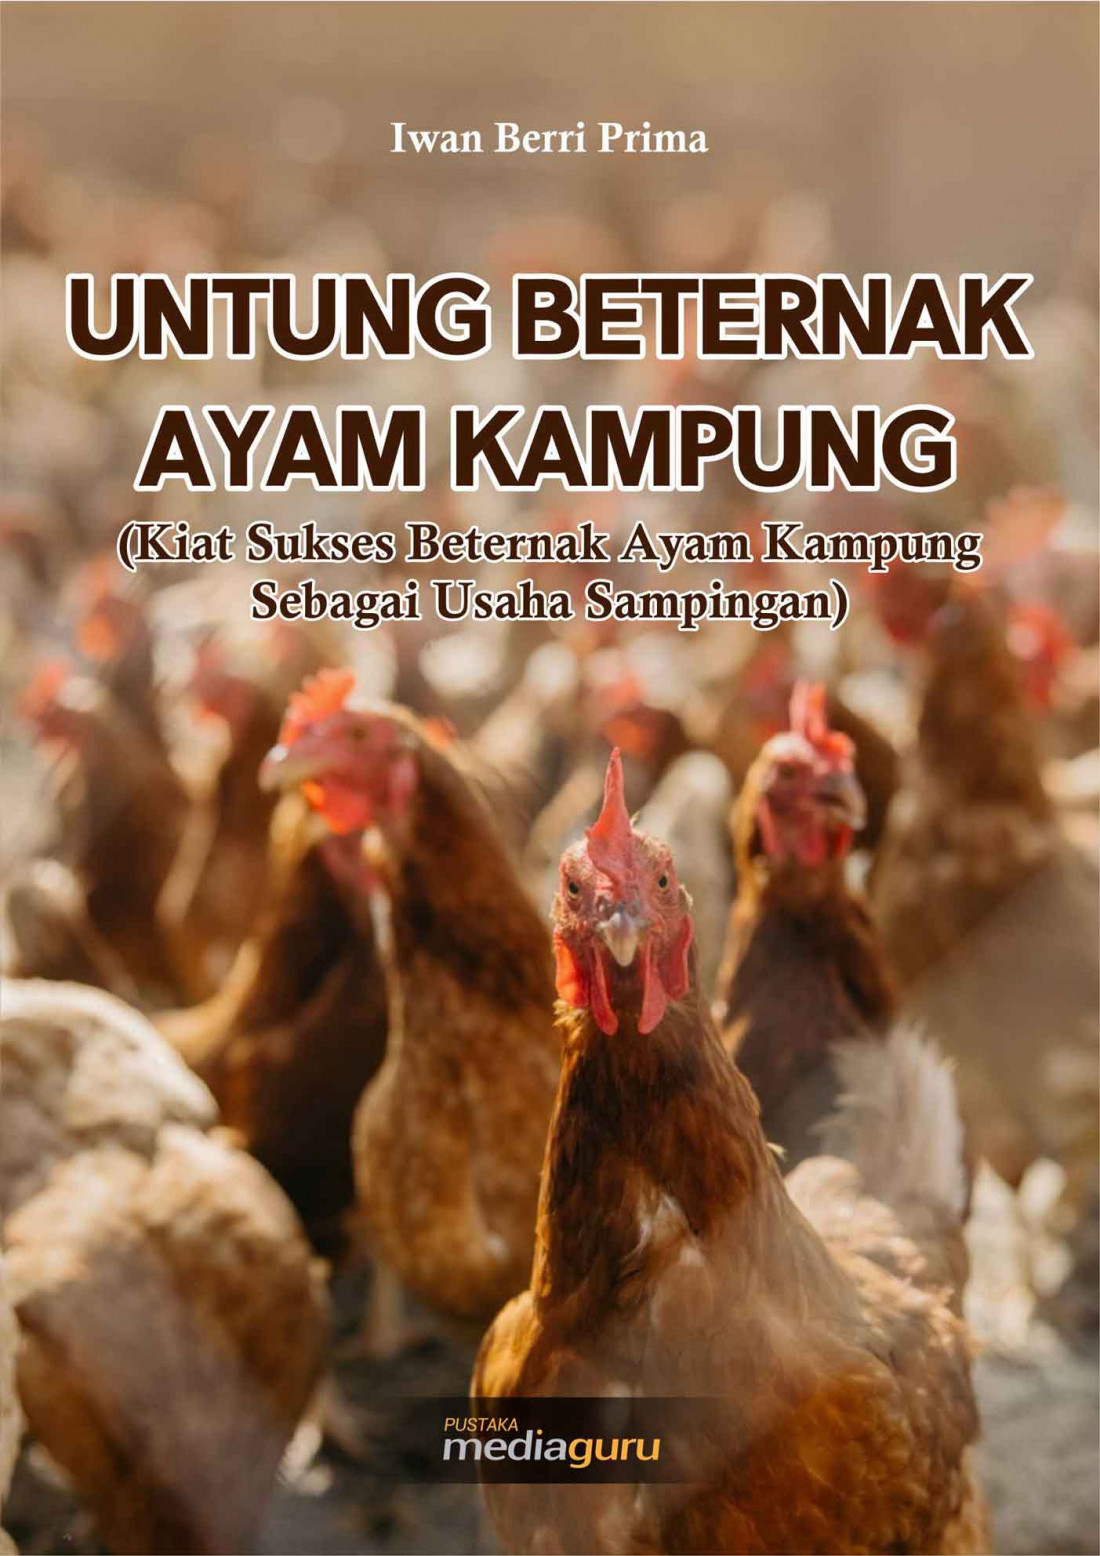 UNTUNG BETERNAK AYAM KAMPUNG (Kiat Sukses Beternak Ayam Kampung Sebagai Usaha Sampingan)